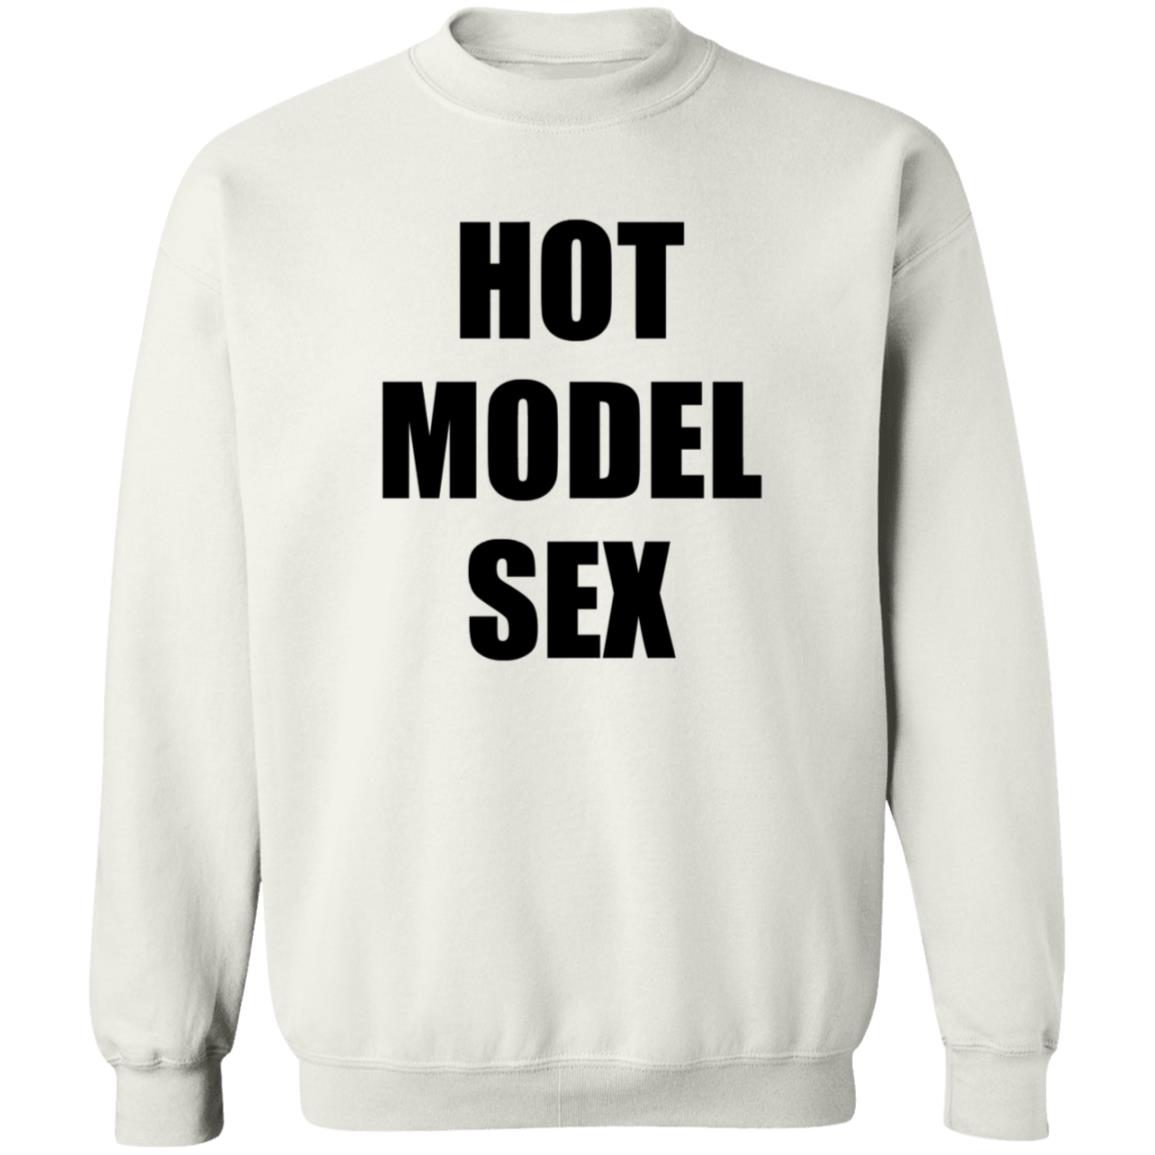 Hot Model Sex Shirt 2